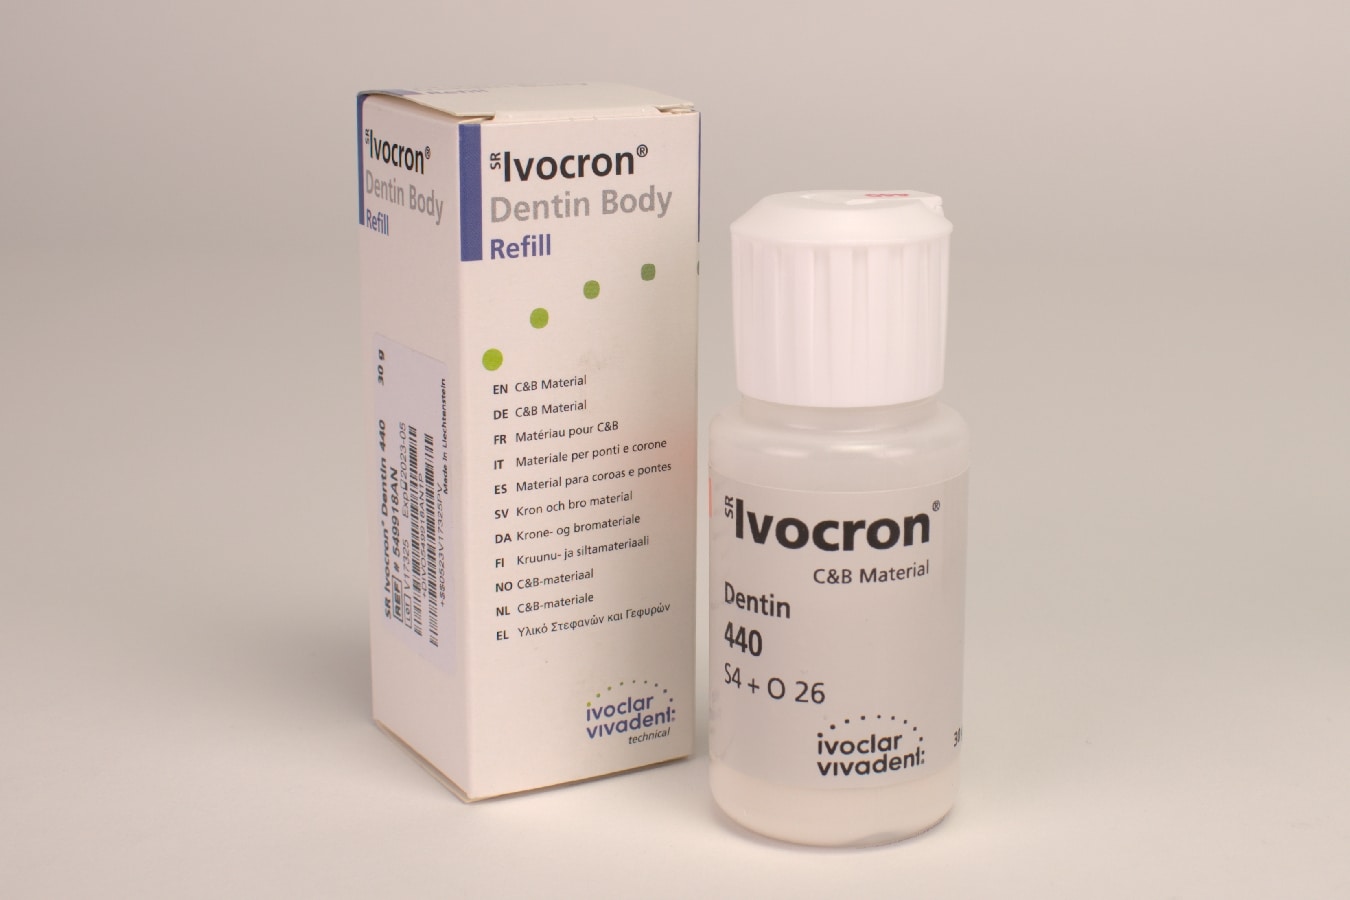 Ivocron Dentin 440/6C 30g